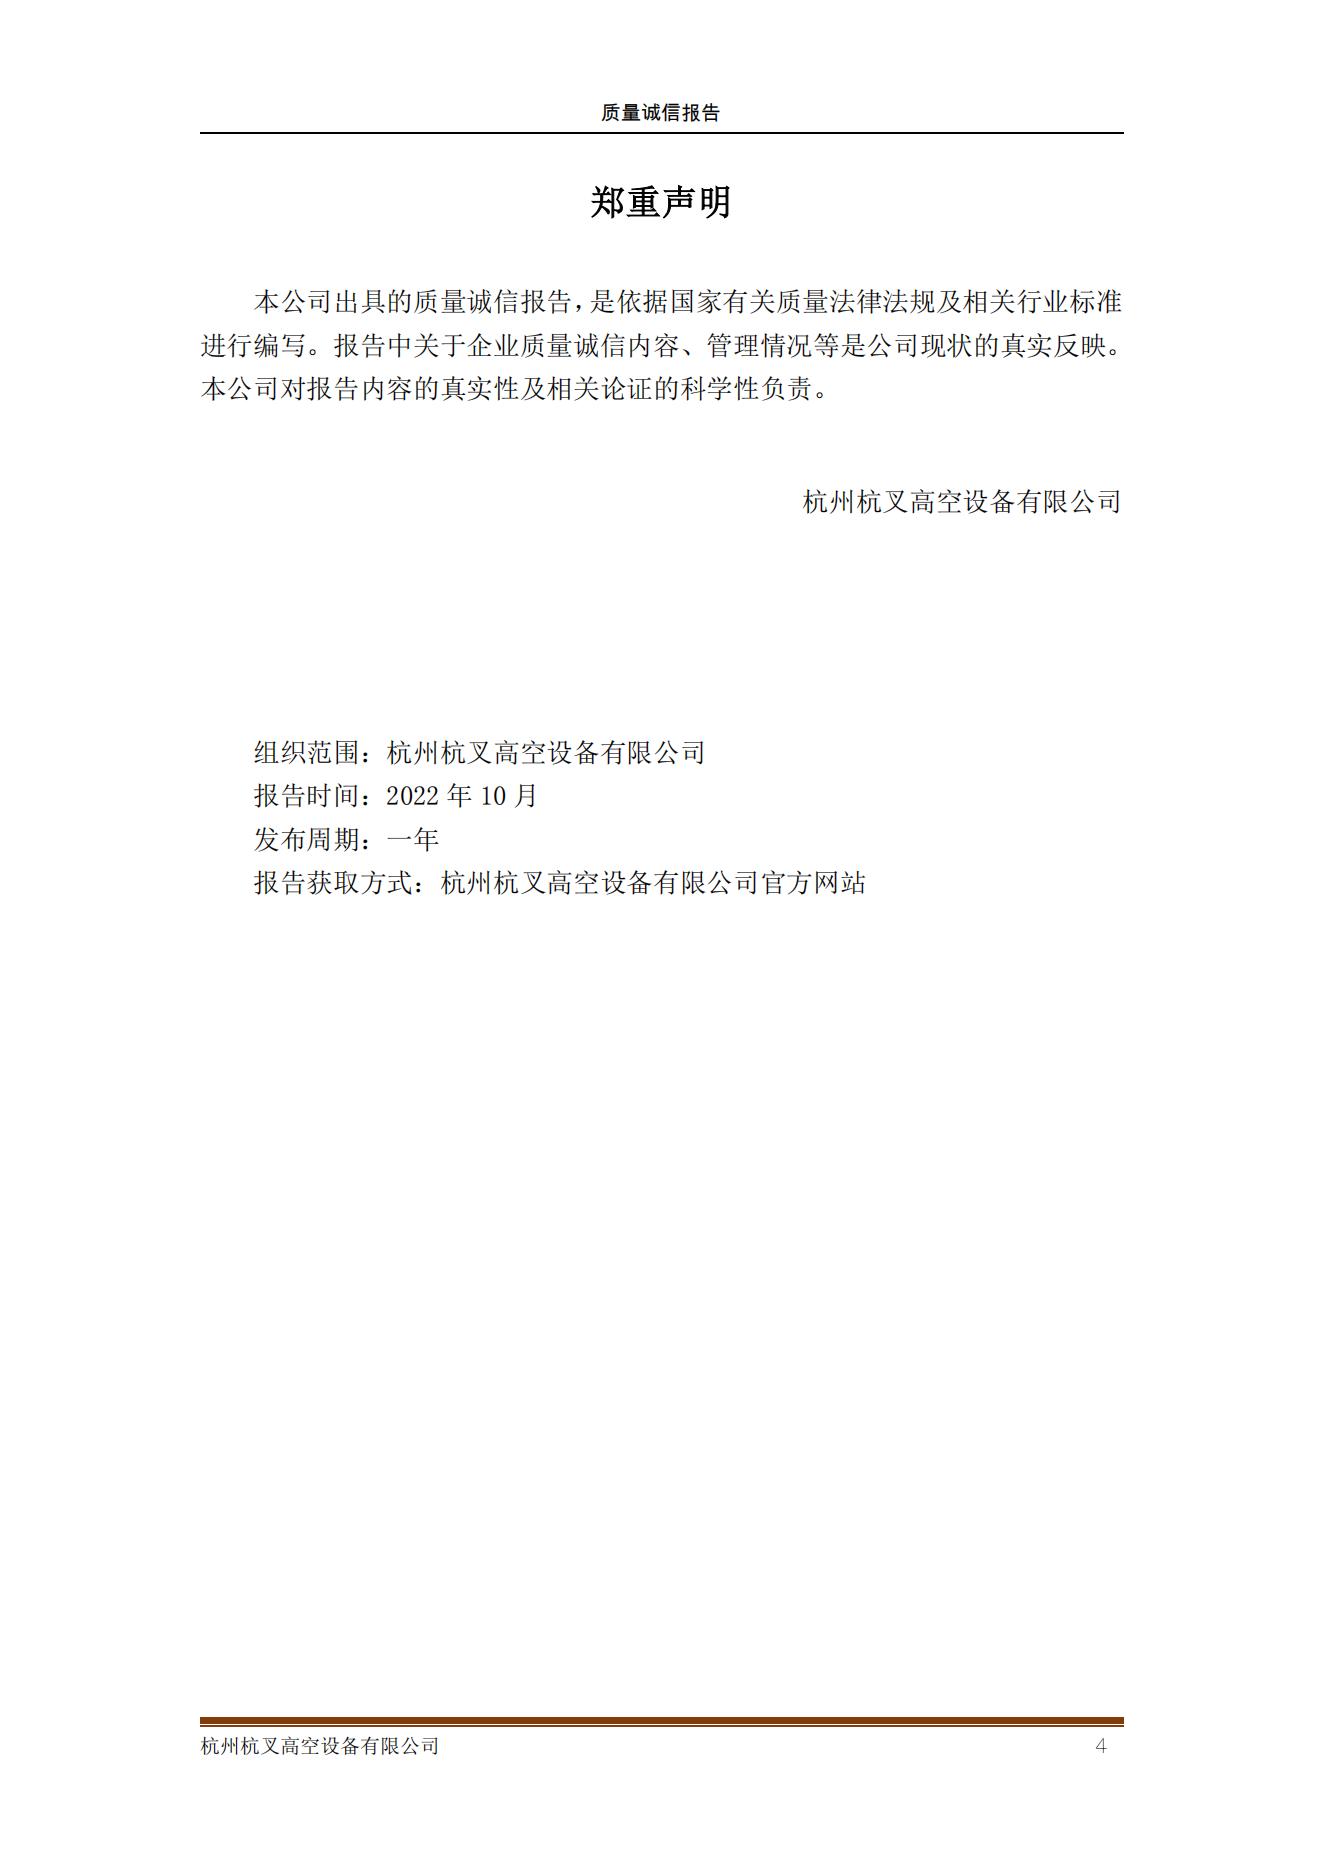 杭州杭叉高空設備公司2021年質量誠信報告(圖4)